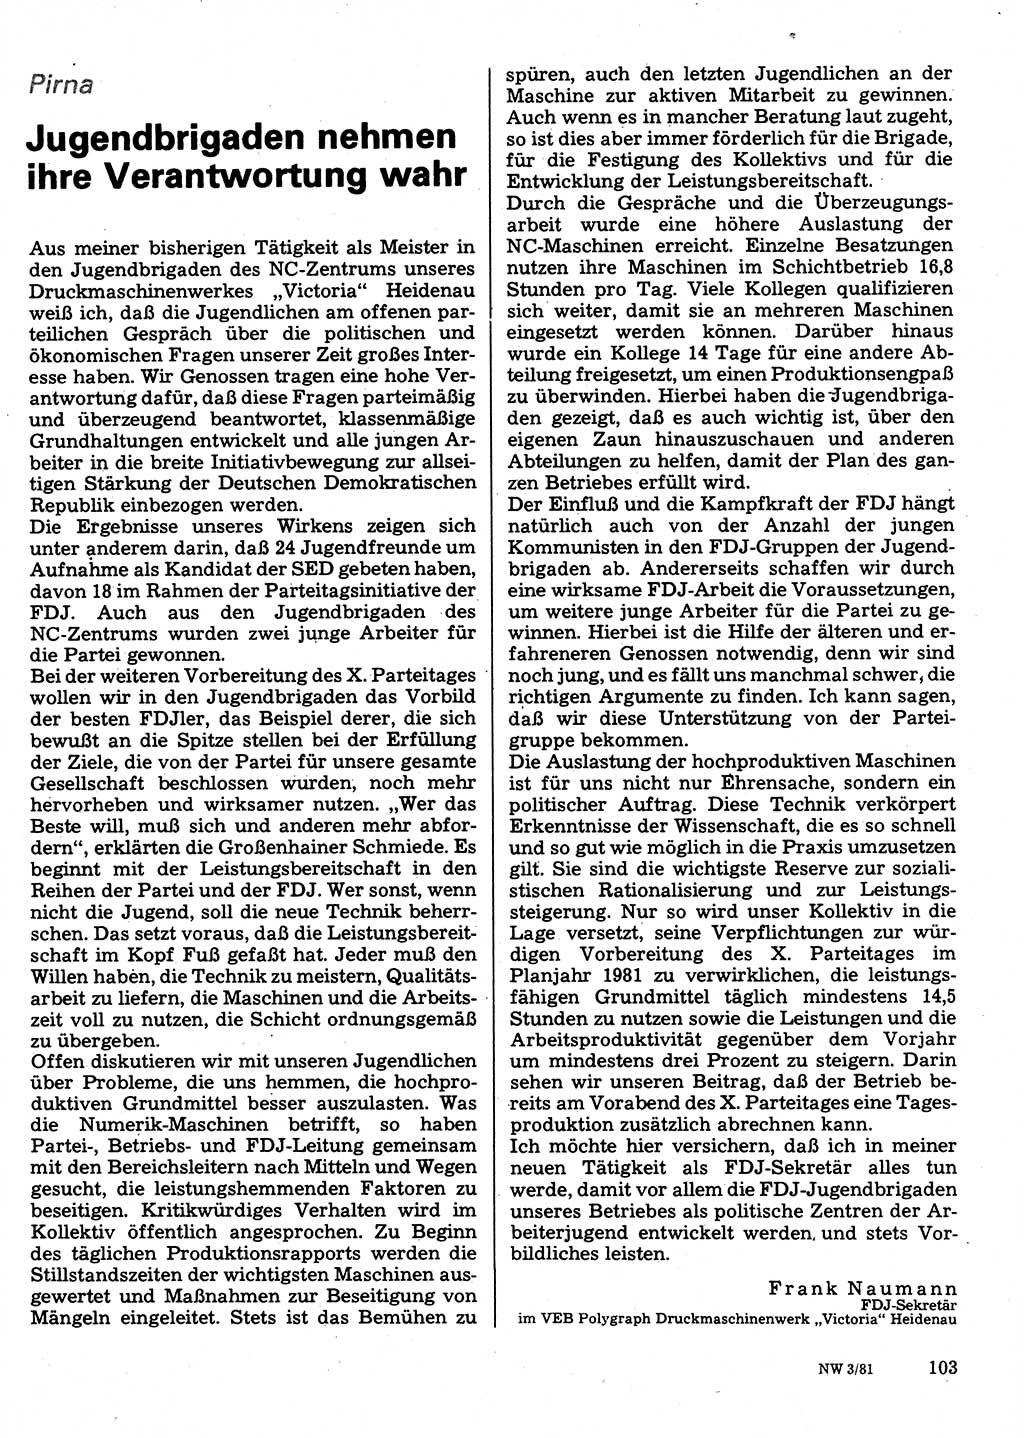 Neuer Weg (NW), Organ des Zentralkomitees (ZK) der SED (Sozialistische Einheitspartei Deutschlands) für Fragen des Parteilebens, 36. Jahrgang [Deutsche Demokratische Republik (DDR)] 1981, Seite 103 (NW ZK SED DDR 1981, S. 103)